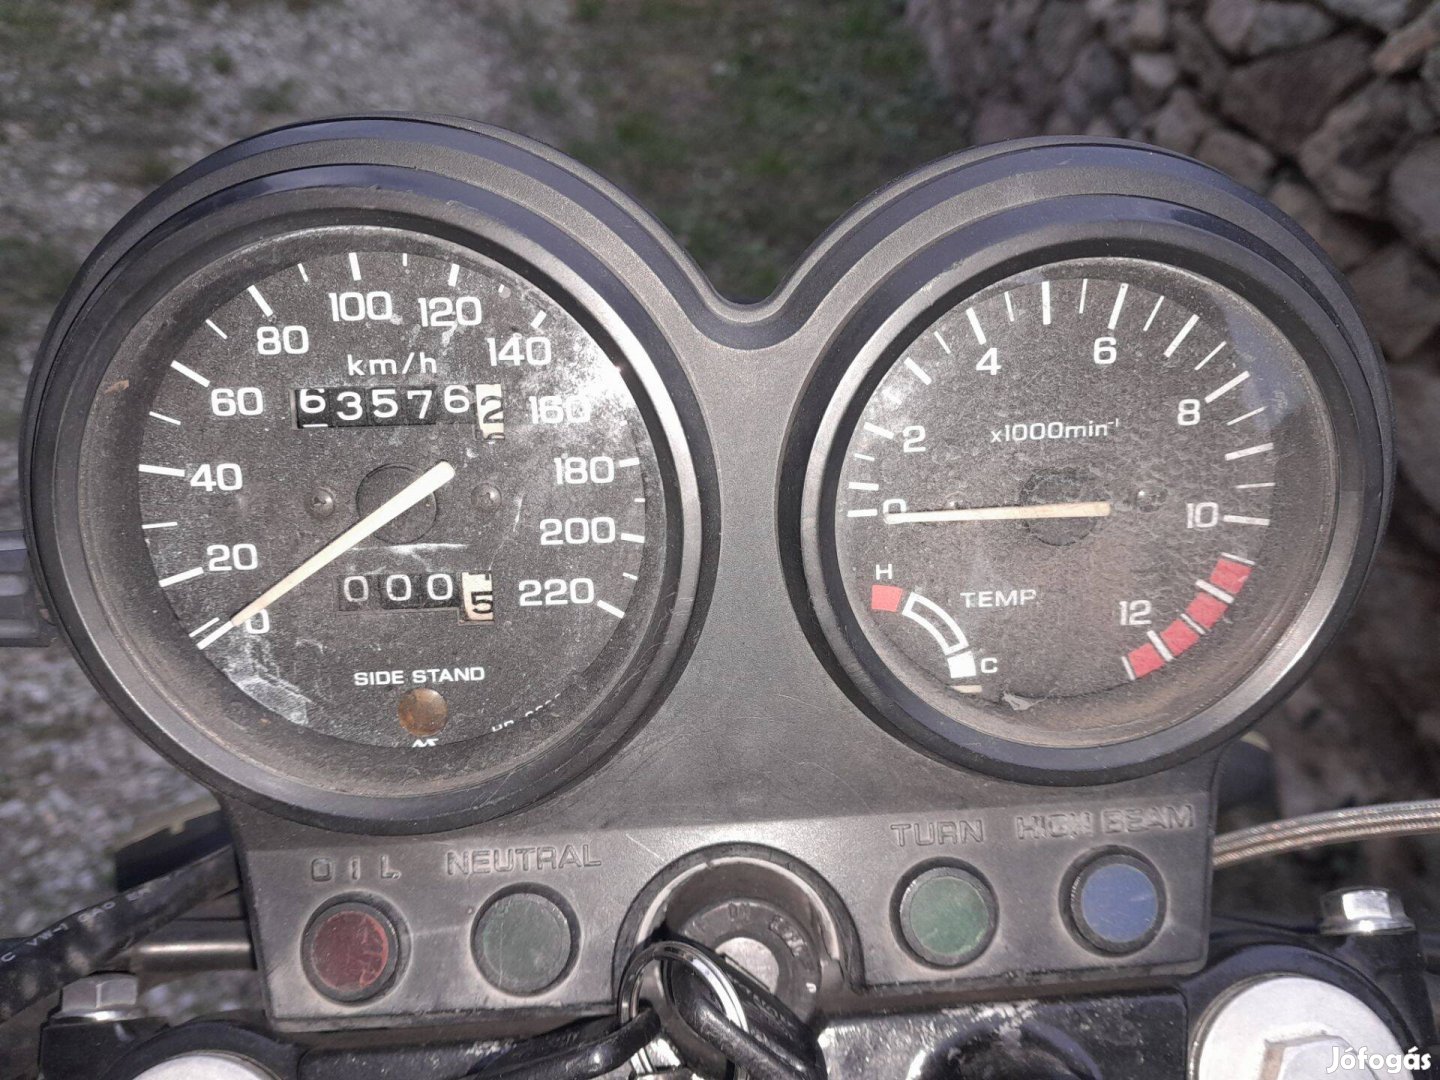 Honda CB 500 motor PC 26 E km óra